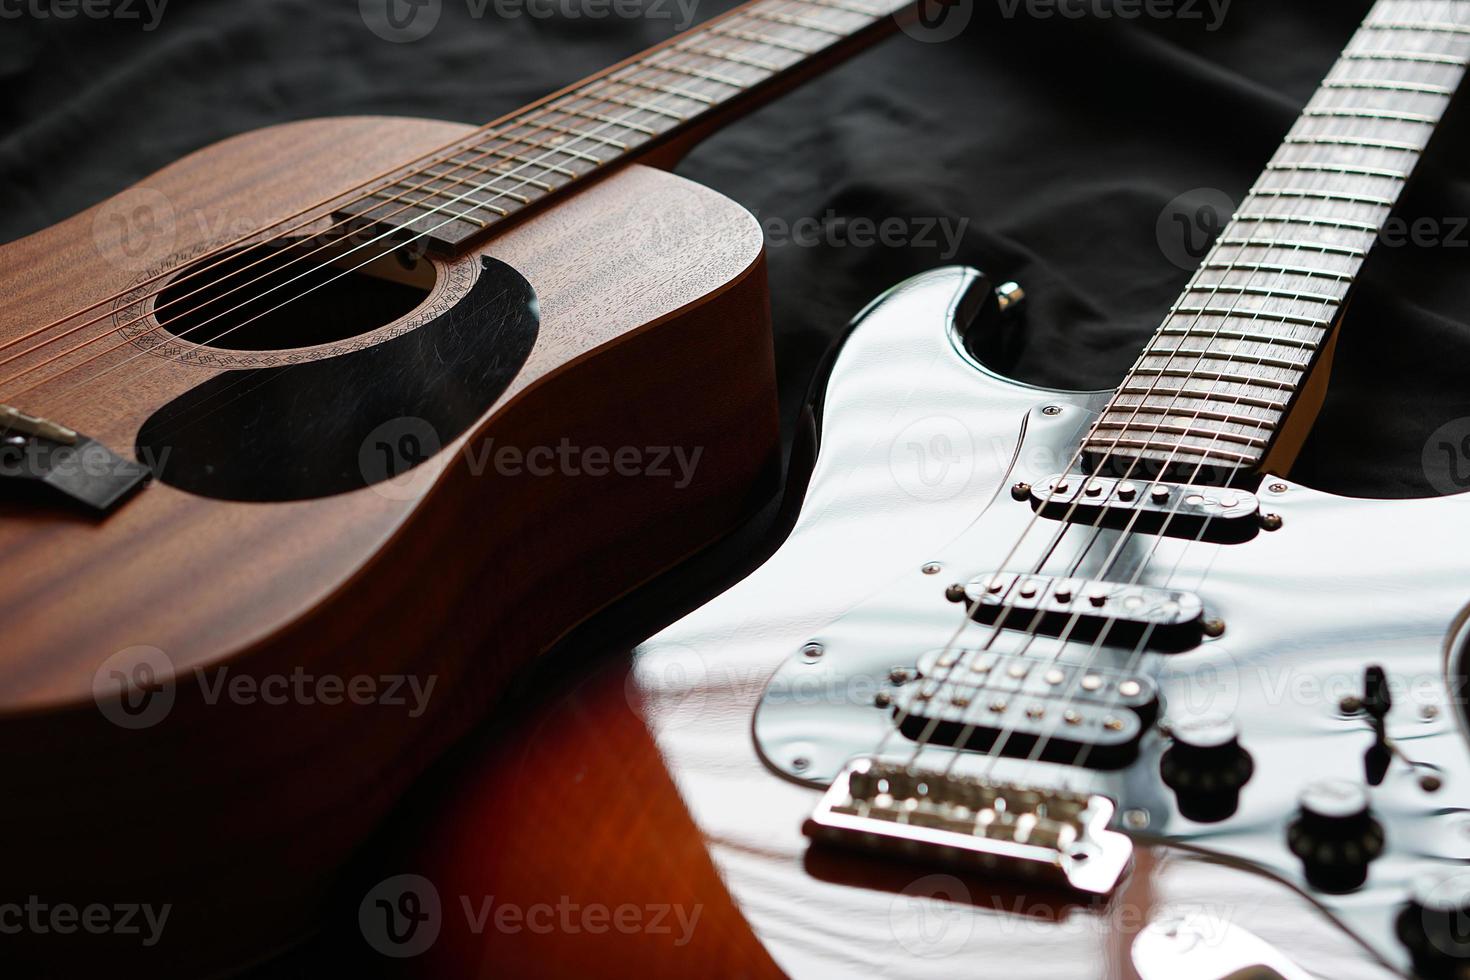 chitarra elettrica e chitarra acustica, macro astratto foto